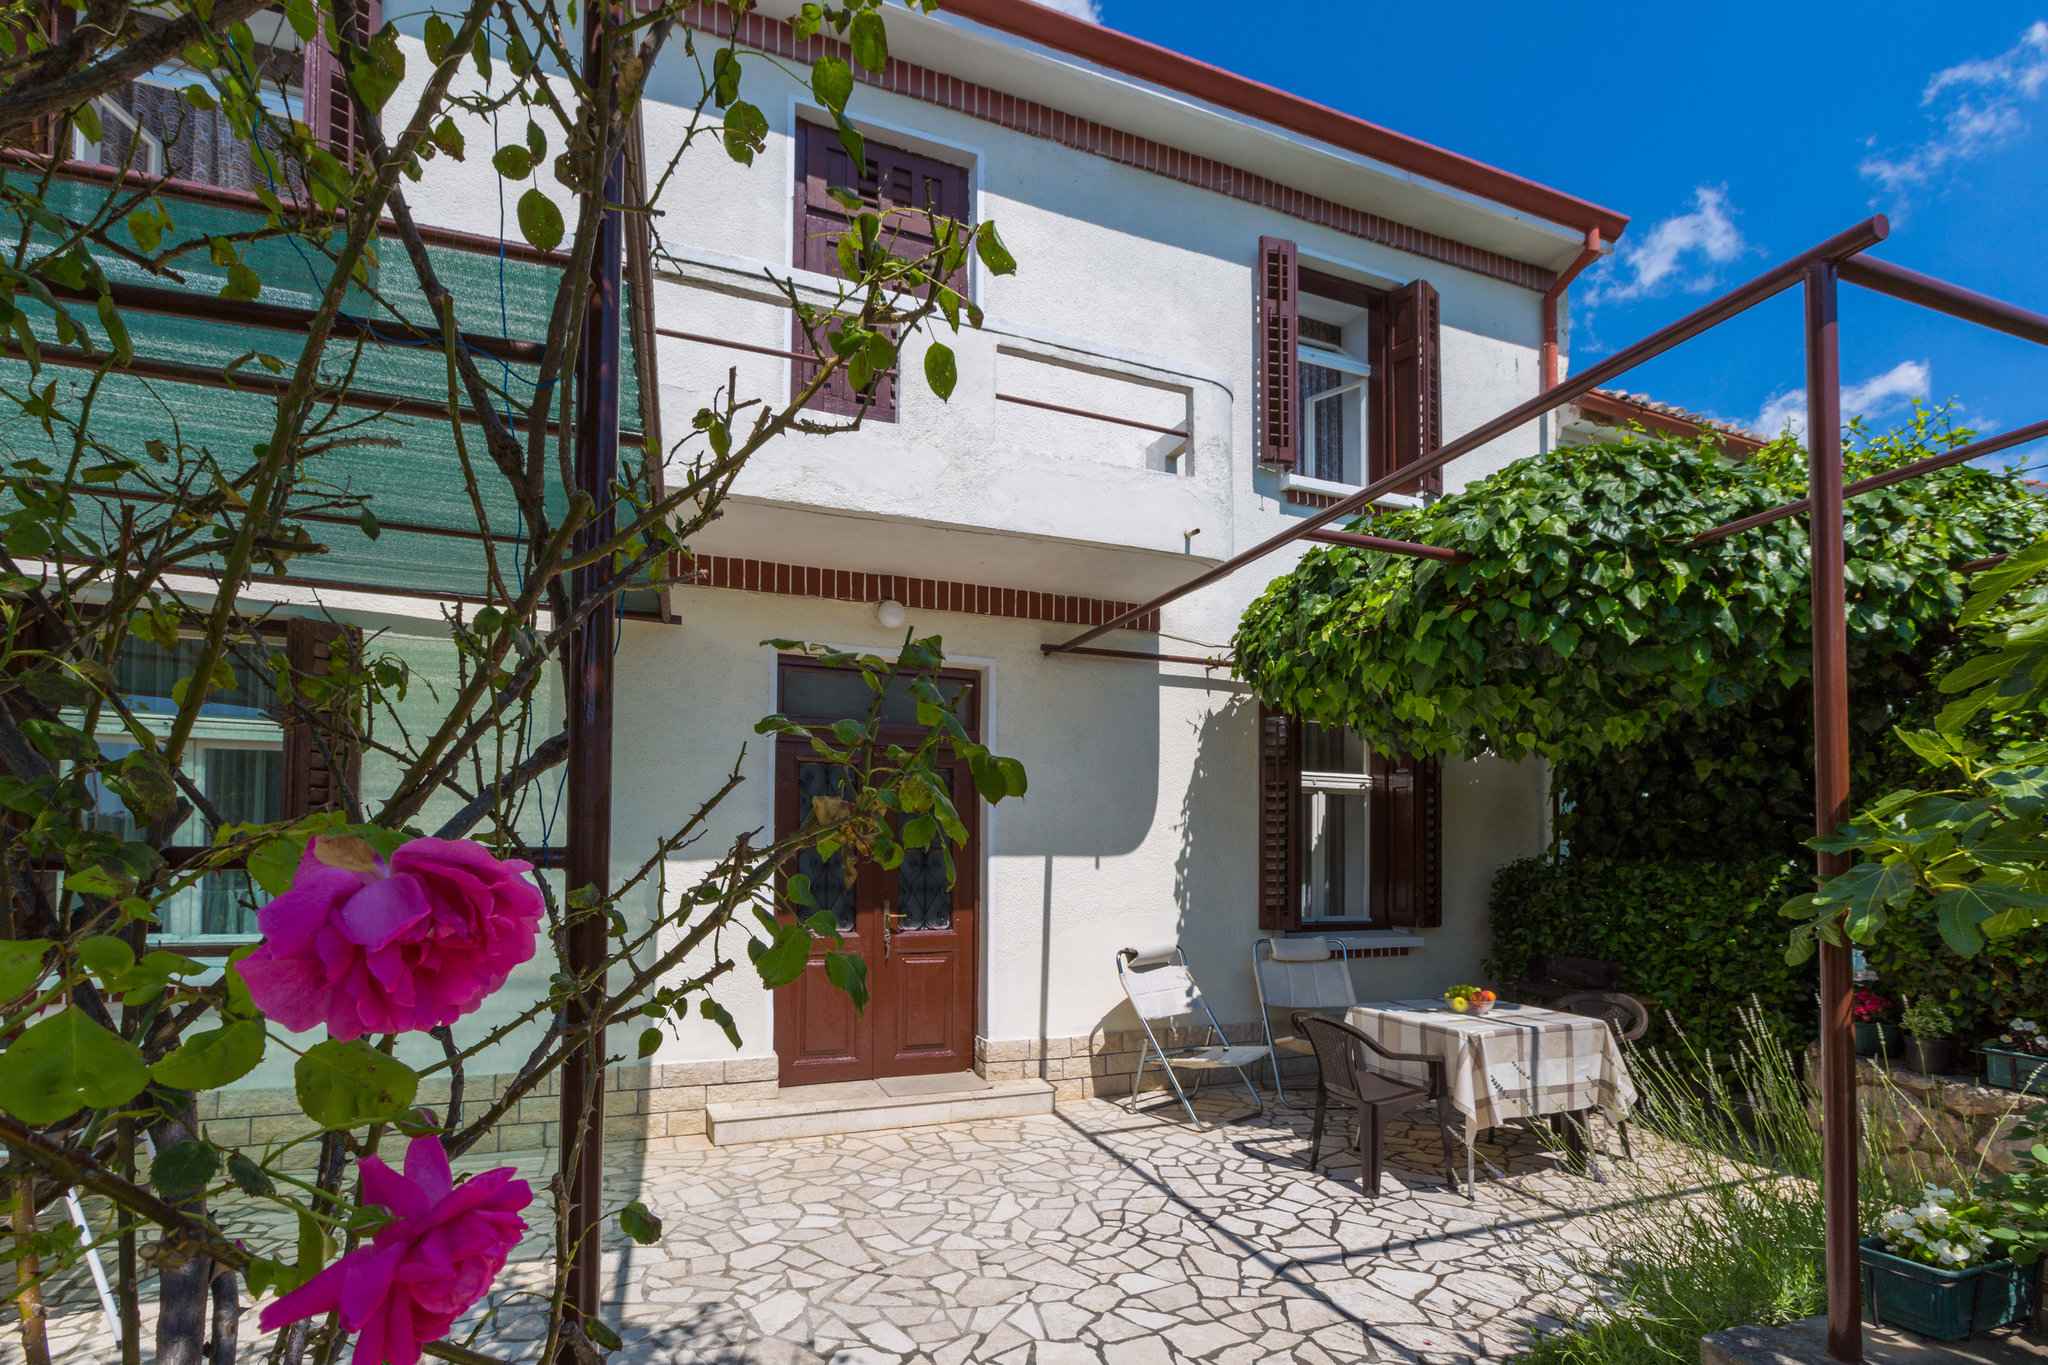 Ferienhaus mit WLAN und SAT-TV Ferienhaus in Kroatien